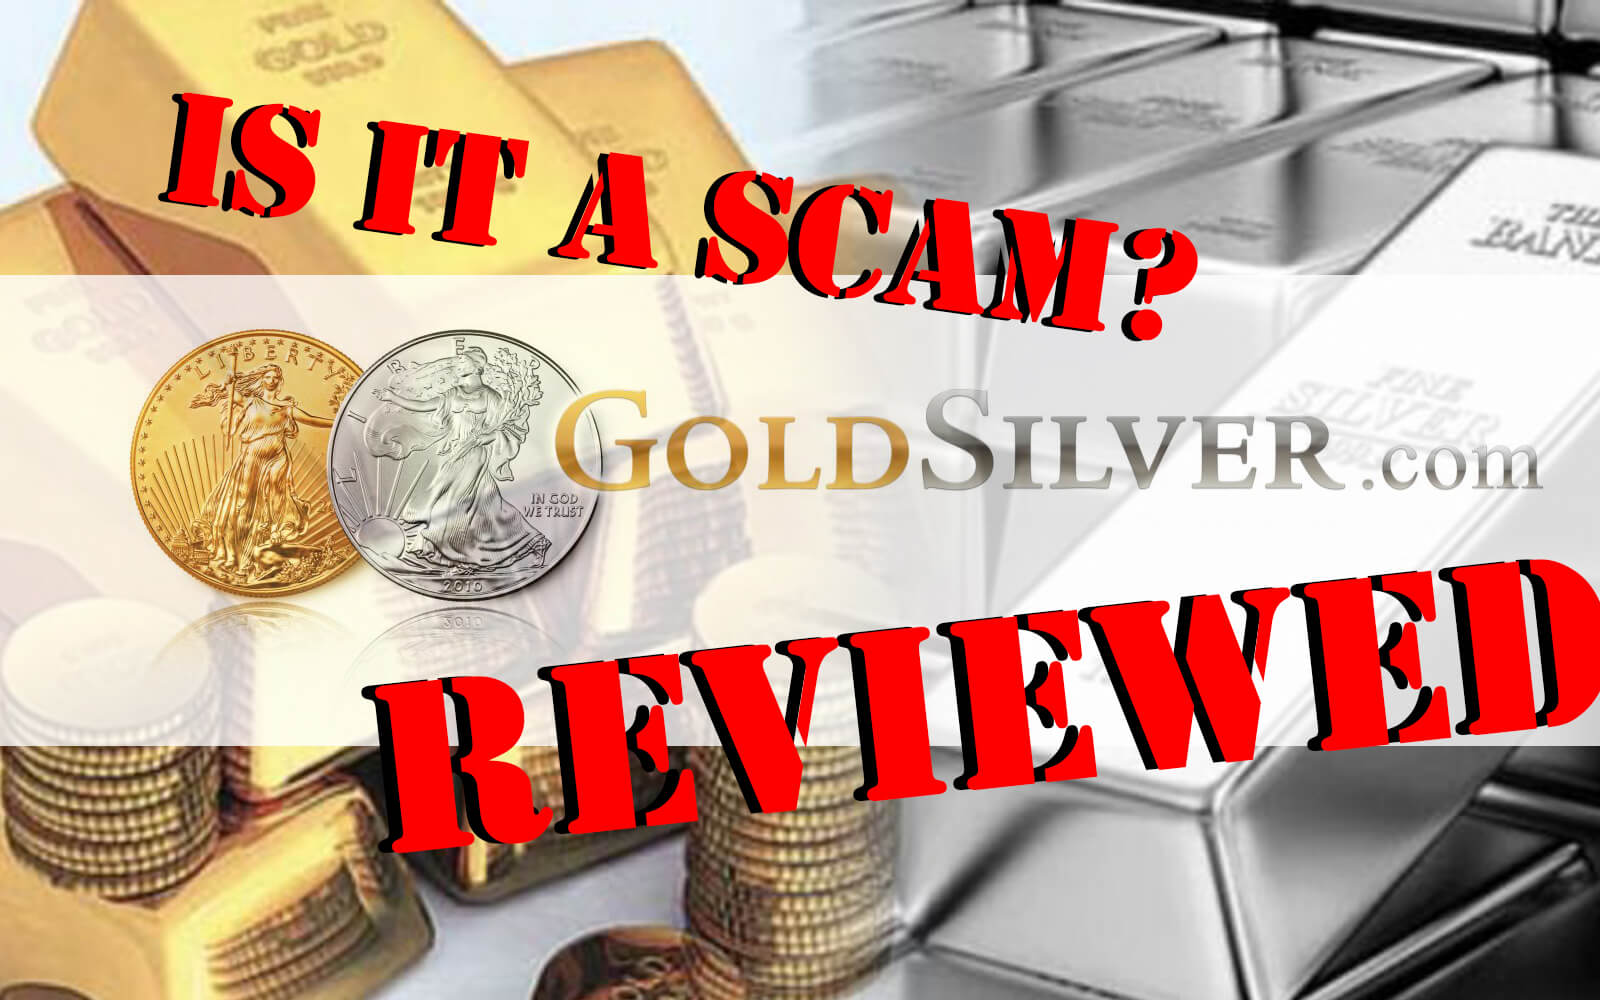 GoldSilver.com Review